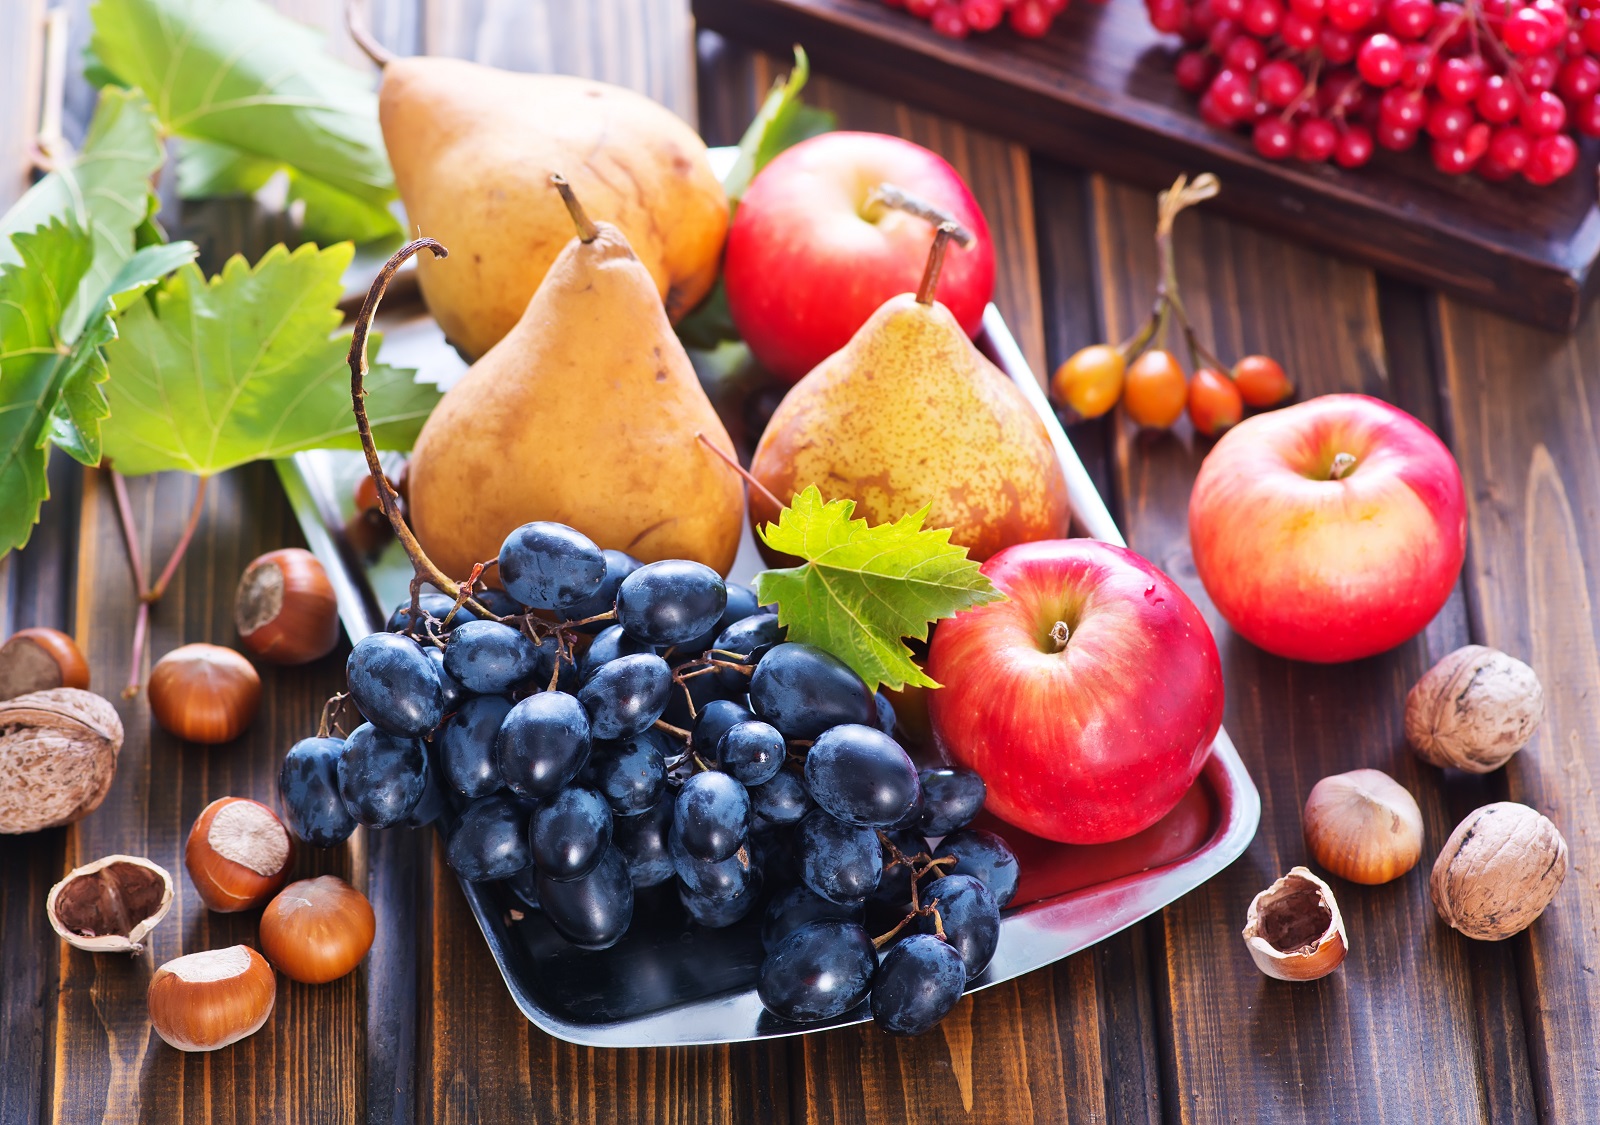 Fruits d'automne colorés, goûteux et savoureux.&nbsp;© tycoon101, Adobe Stock